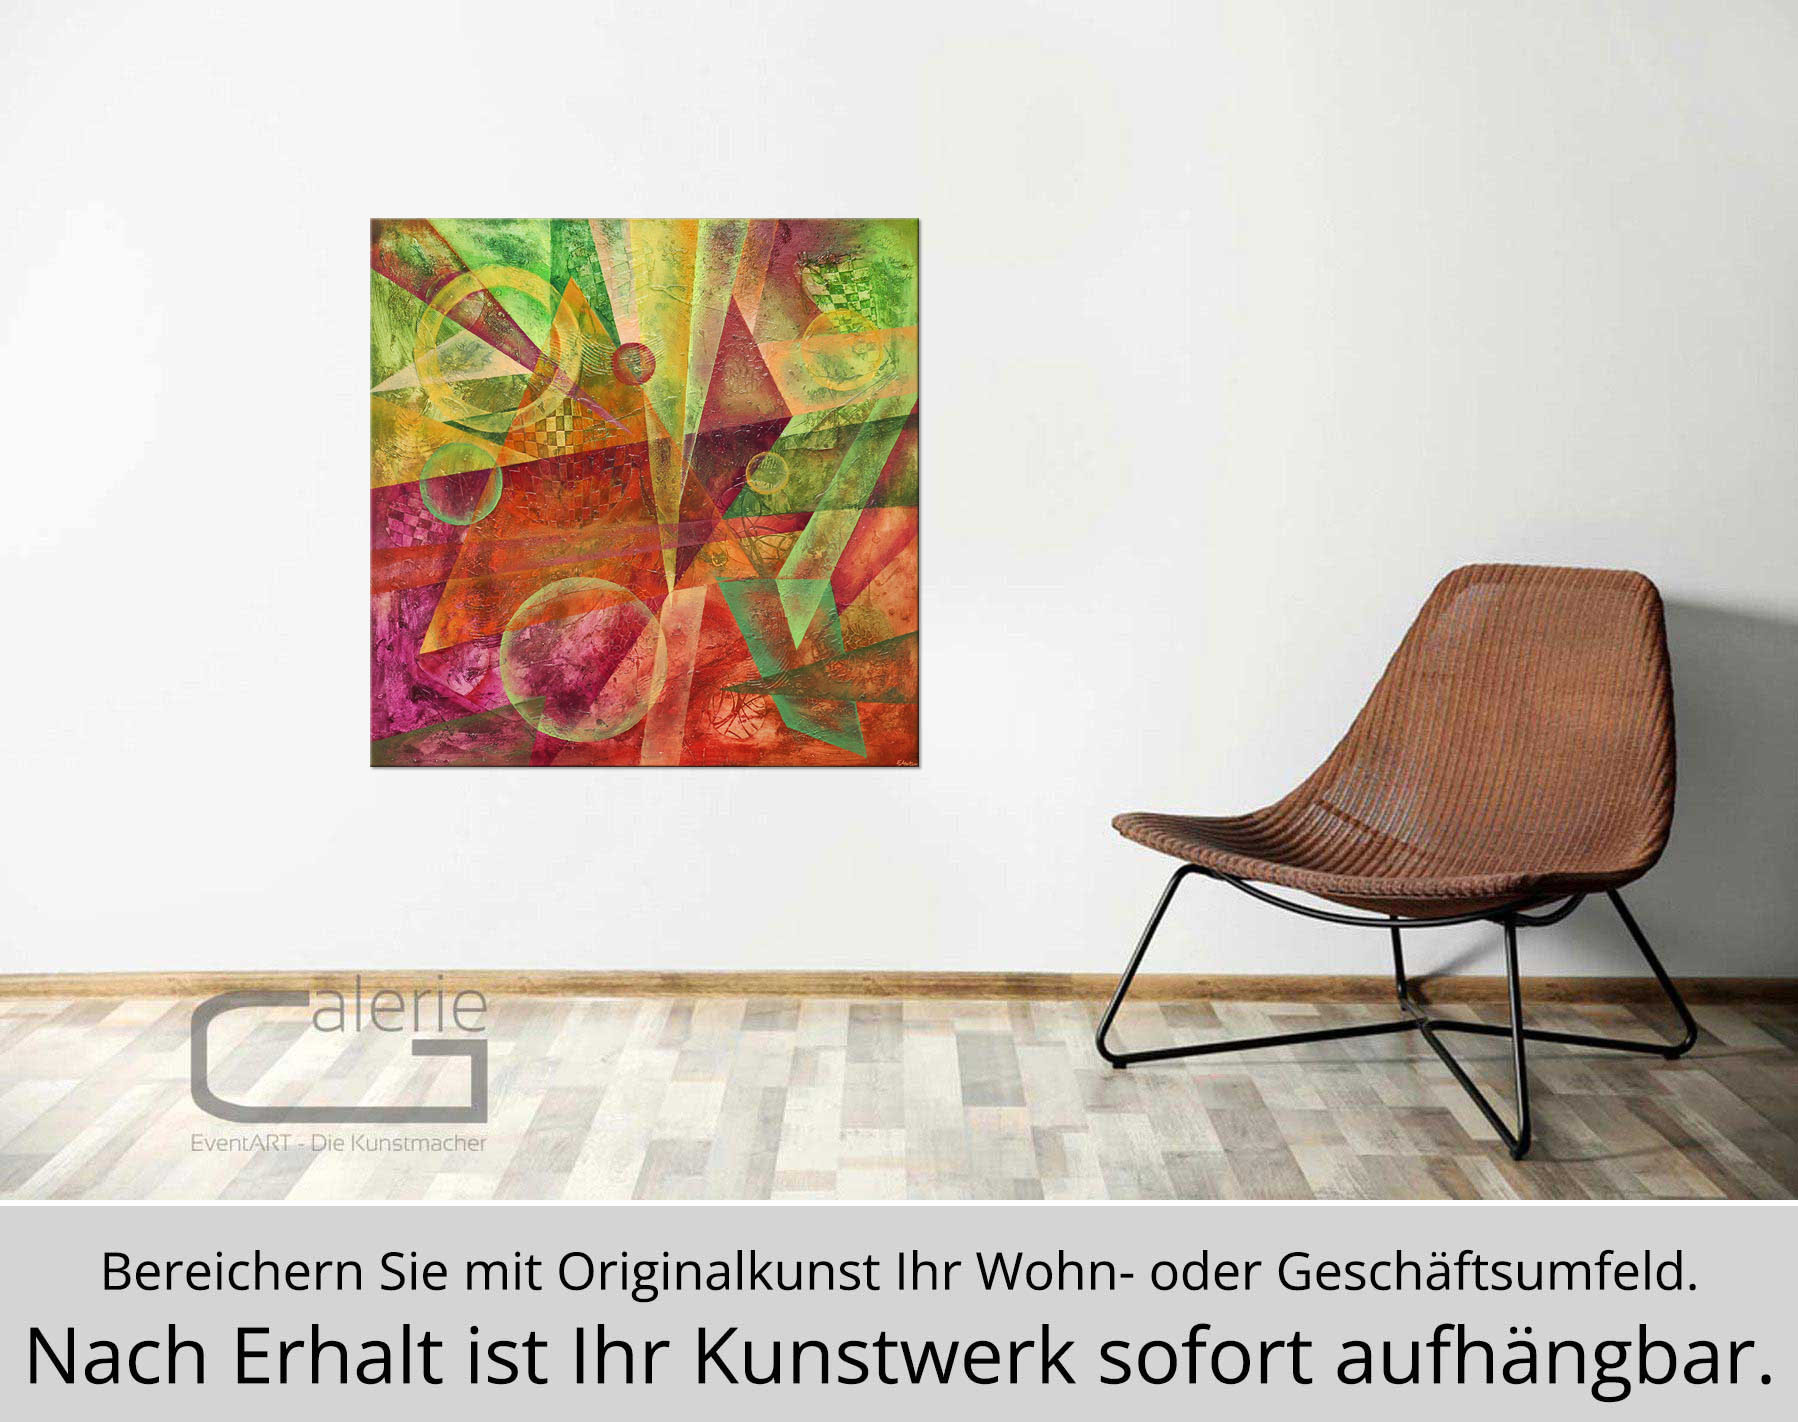 Abstrakte Malerei von Ewa Martens: "Zeitfenster - Freude", Original (Unikat)